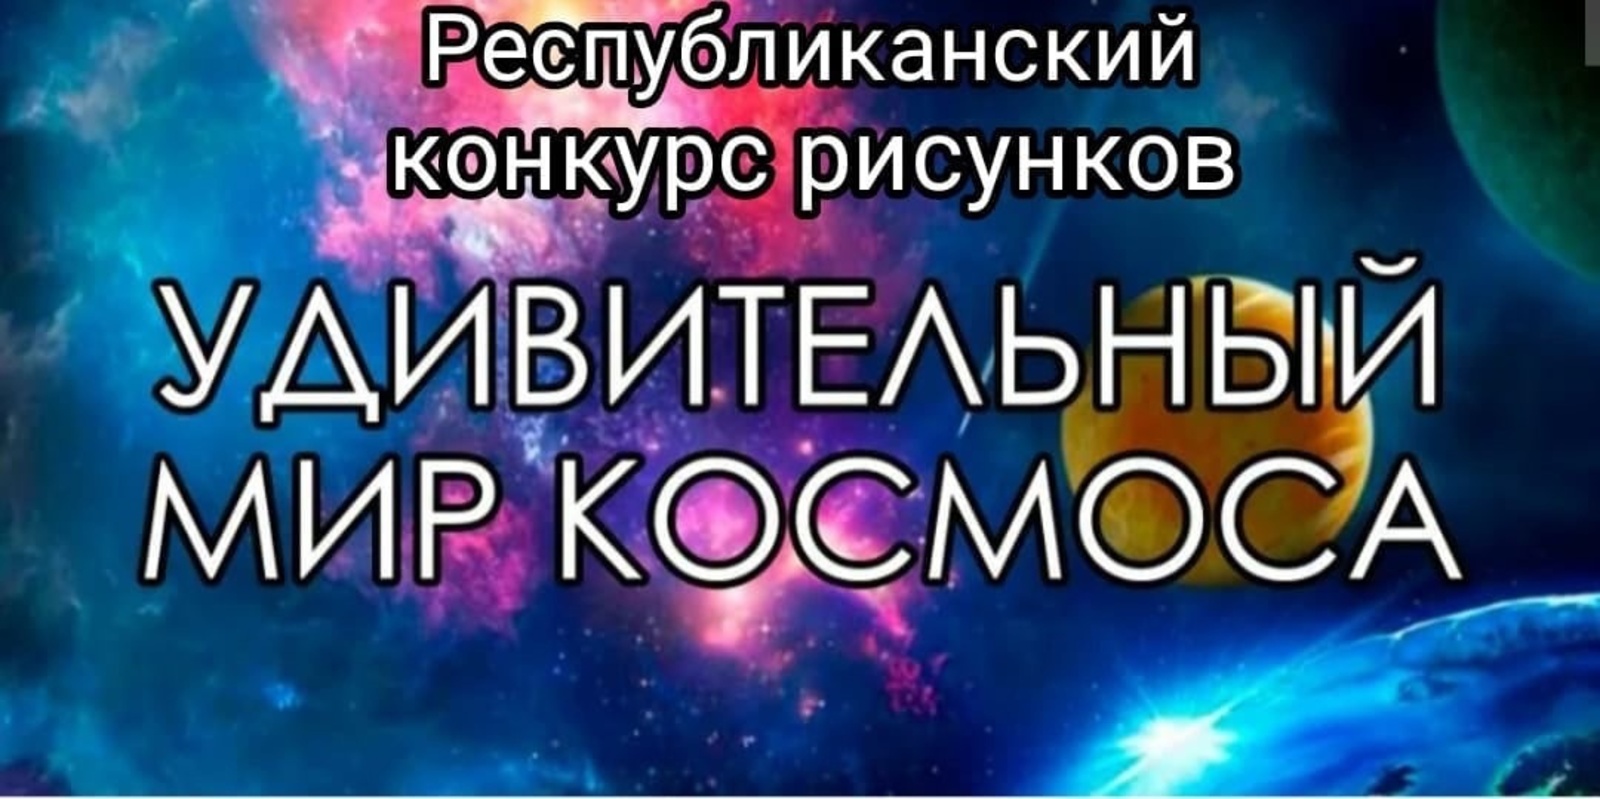 В Башкирии объявлен конкурс художественных работ среди молодежи на тему космоса